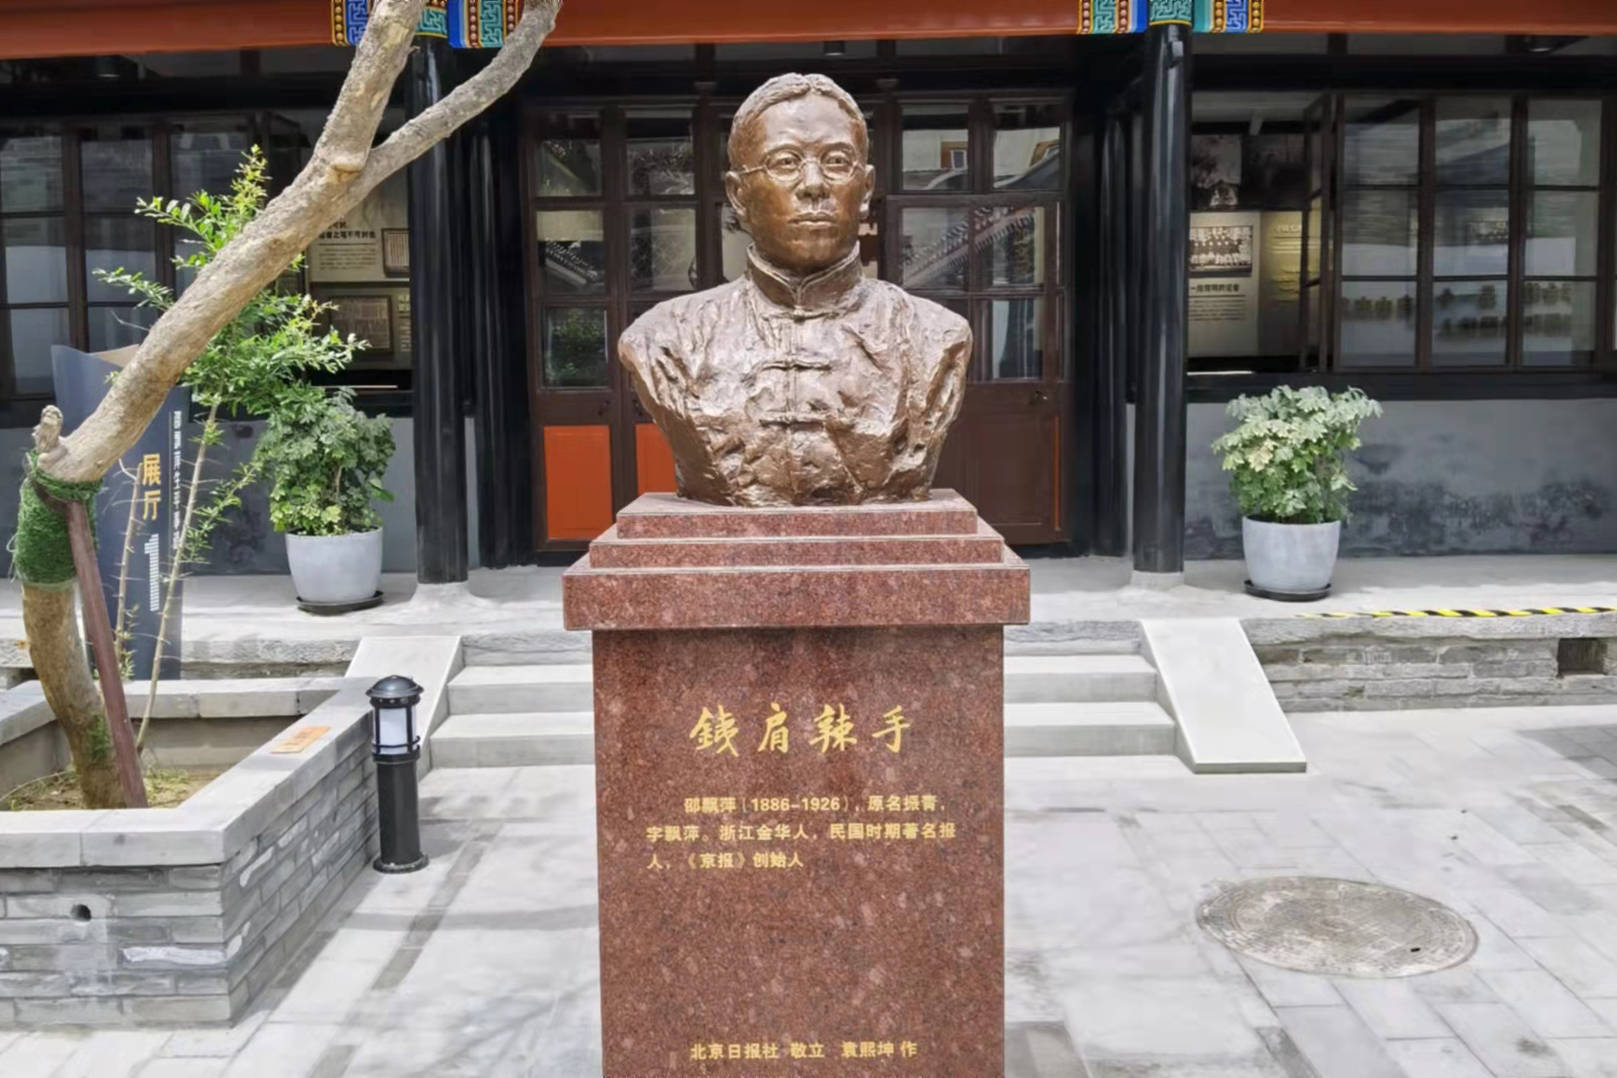 京报馆旧址是邵飘萍的故居